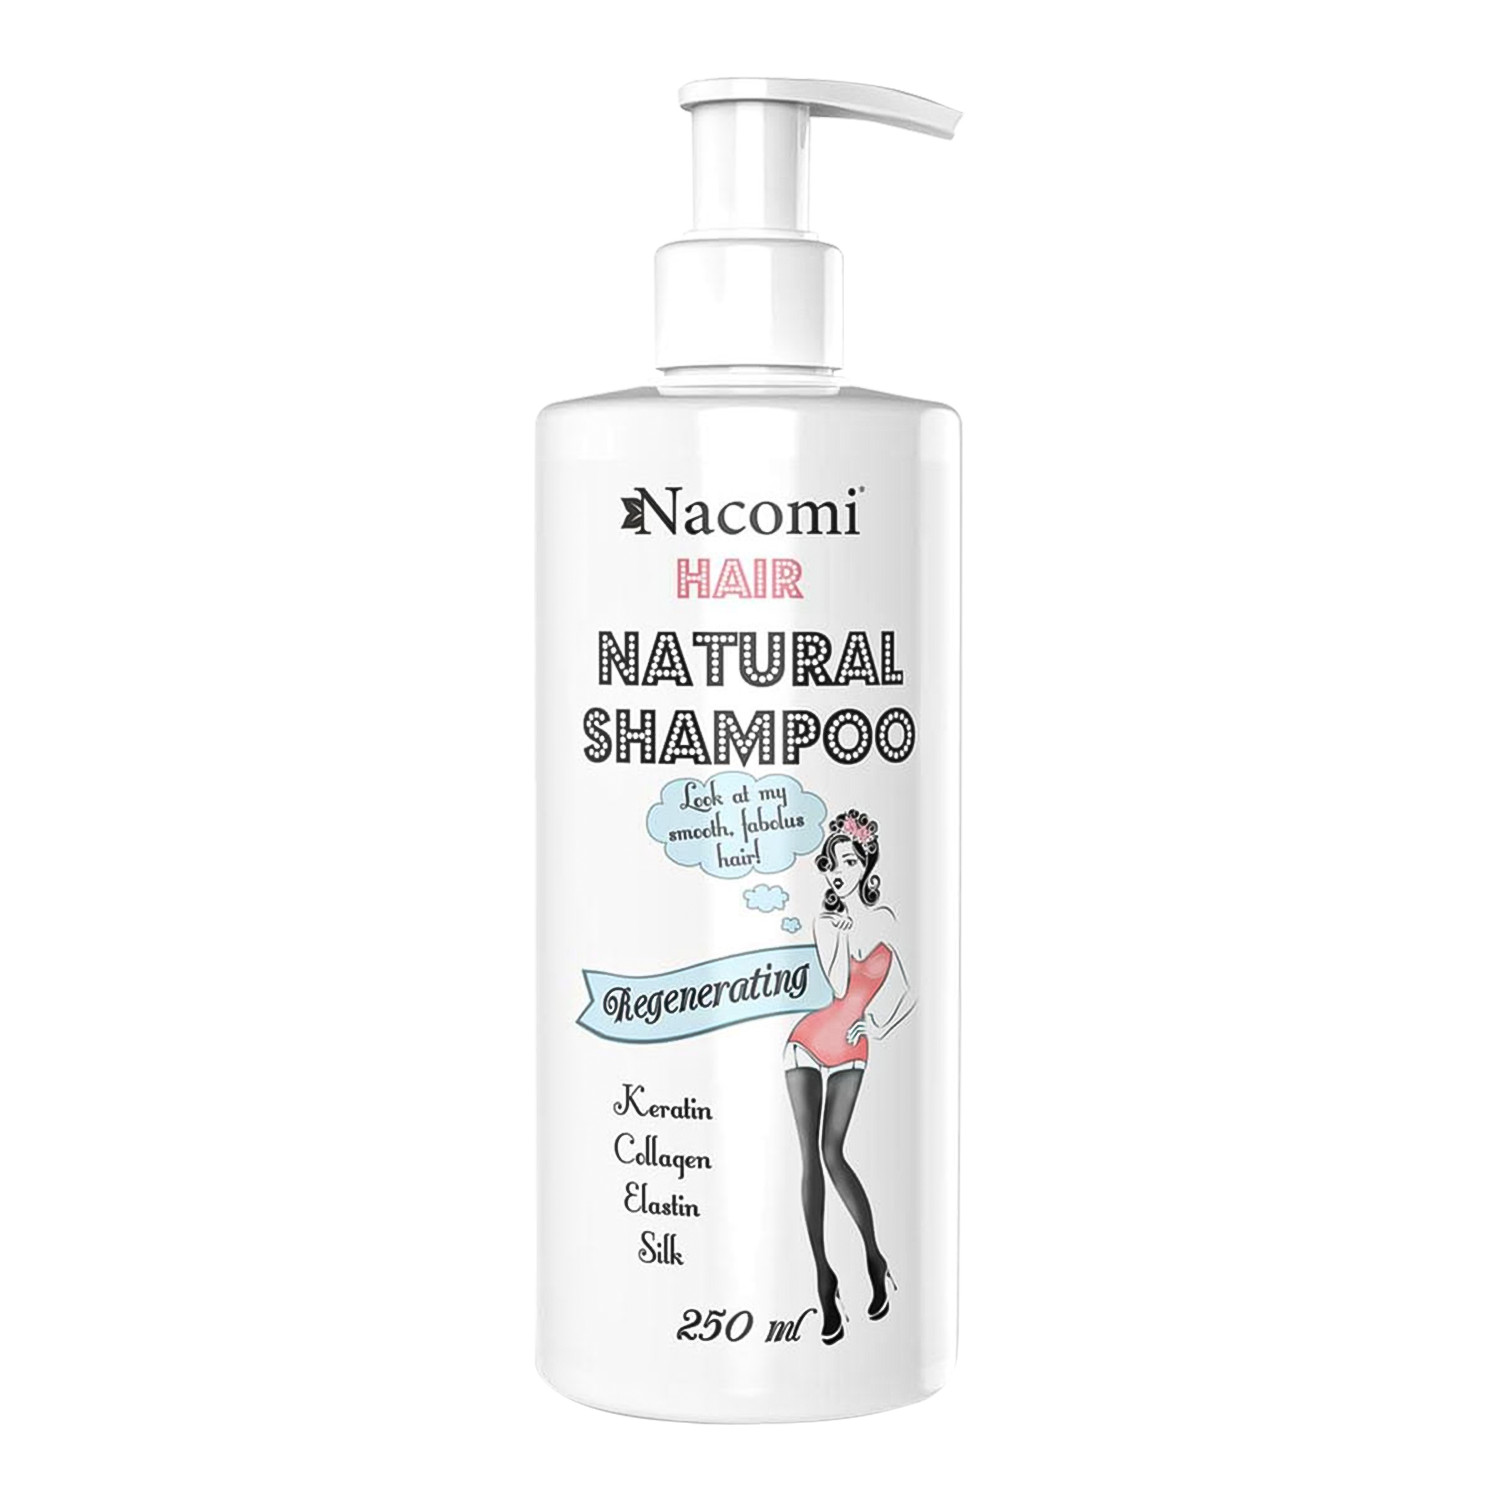 nacomi szampon odżywczo-regenerujący do włosów 250ml